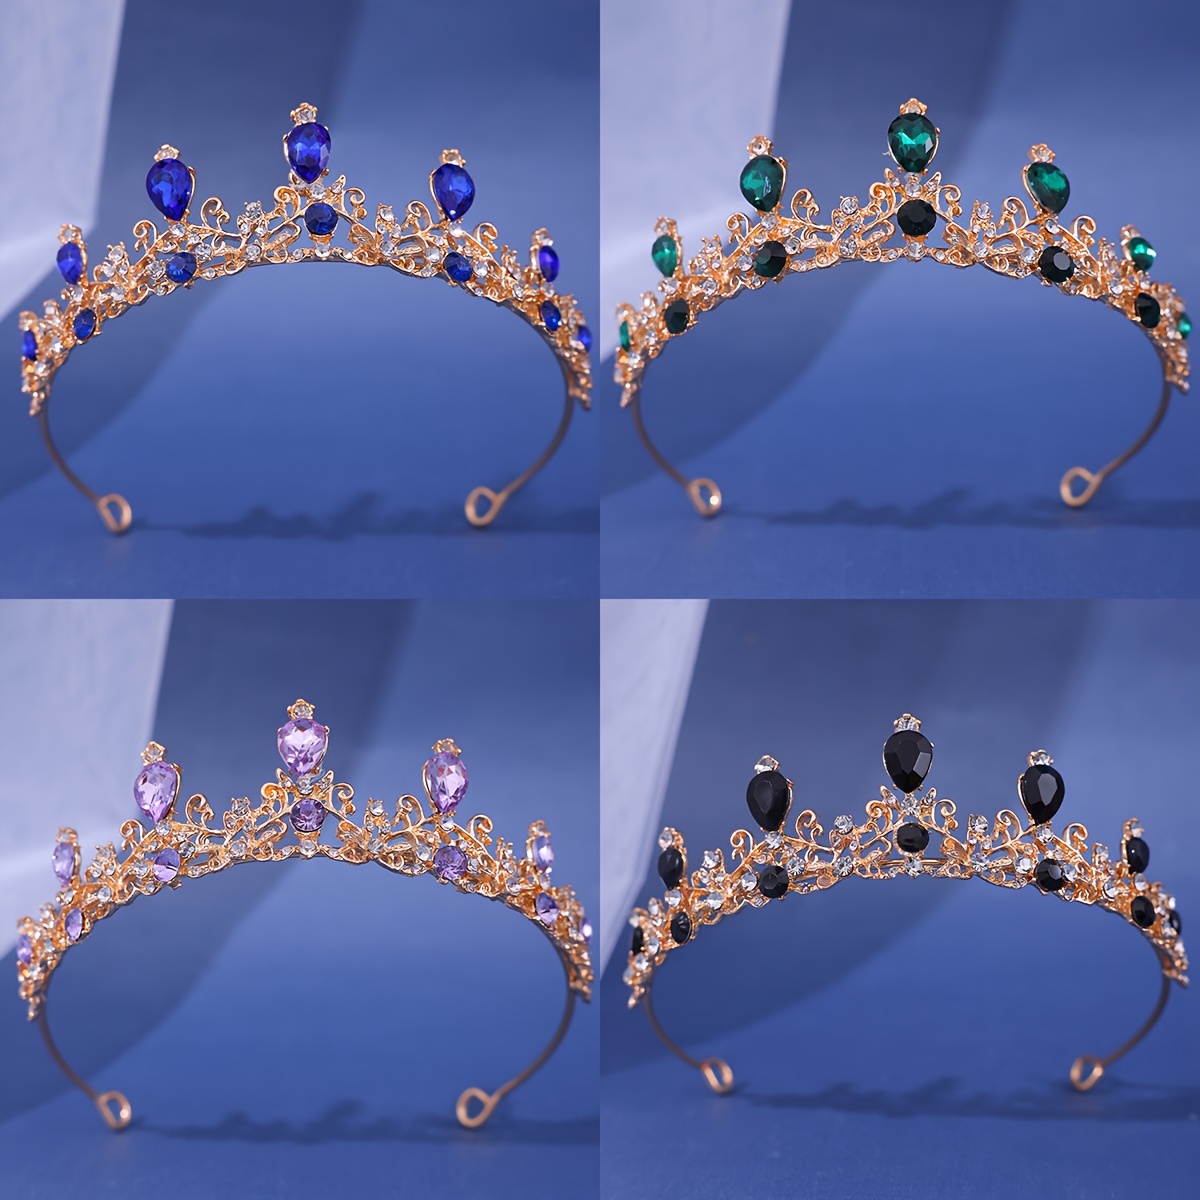 5pcs enfants princesse diadème couronne mis filles habiller accessoires de  fête - Achat / Vente diadème couronne pour enfants 